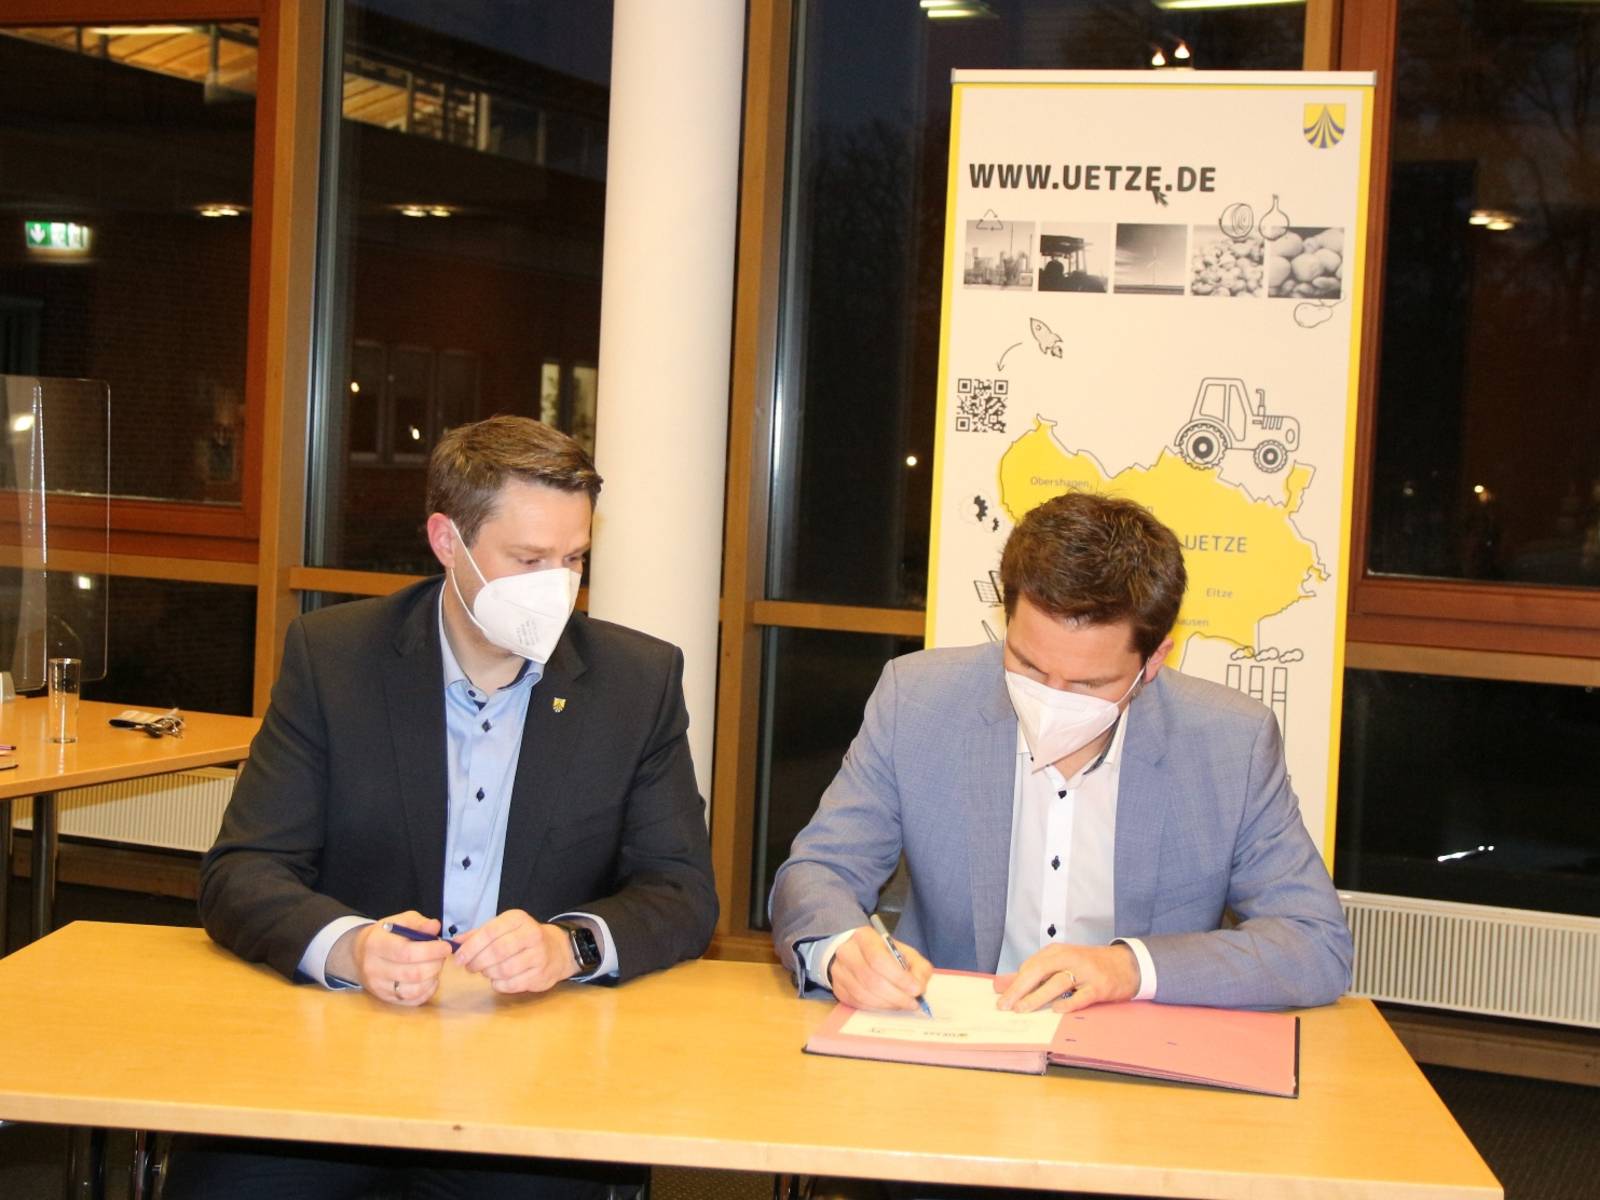 Zwei Herren an einem Tisch, einer unterschreibt  etwas. Der andere schaut zu. Im Hintergrund ein Banner mit der Aufschrift www.uetze.de.